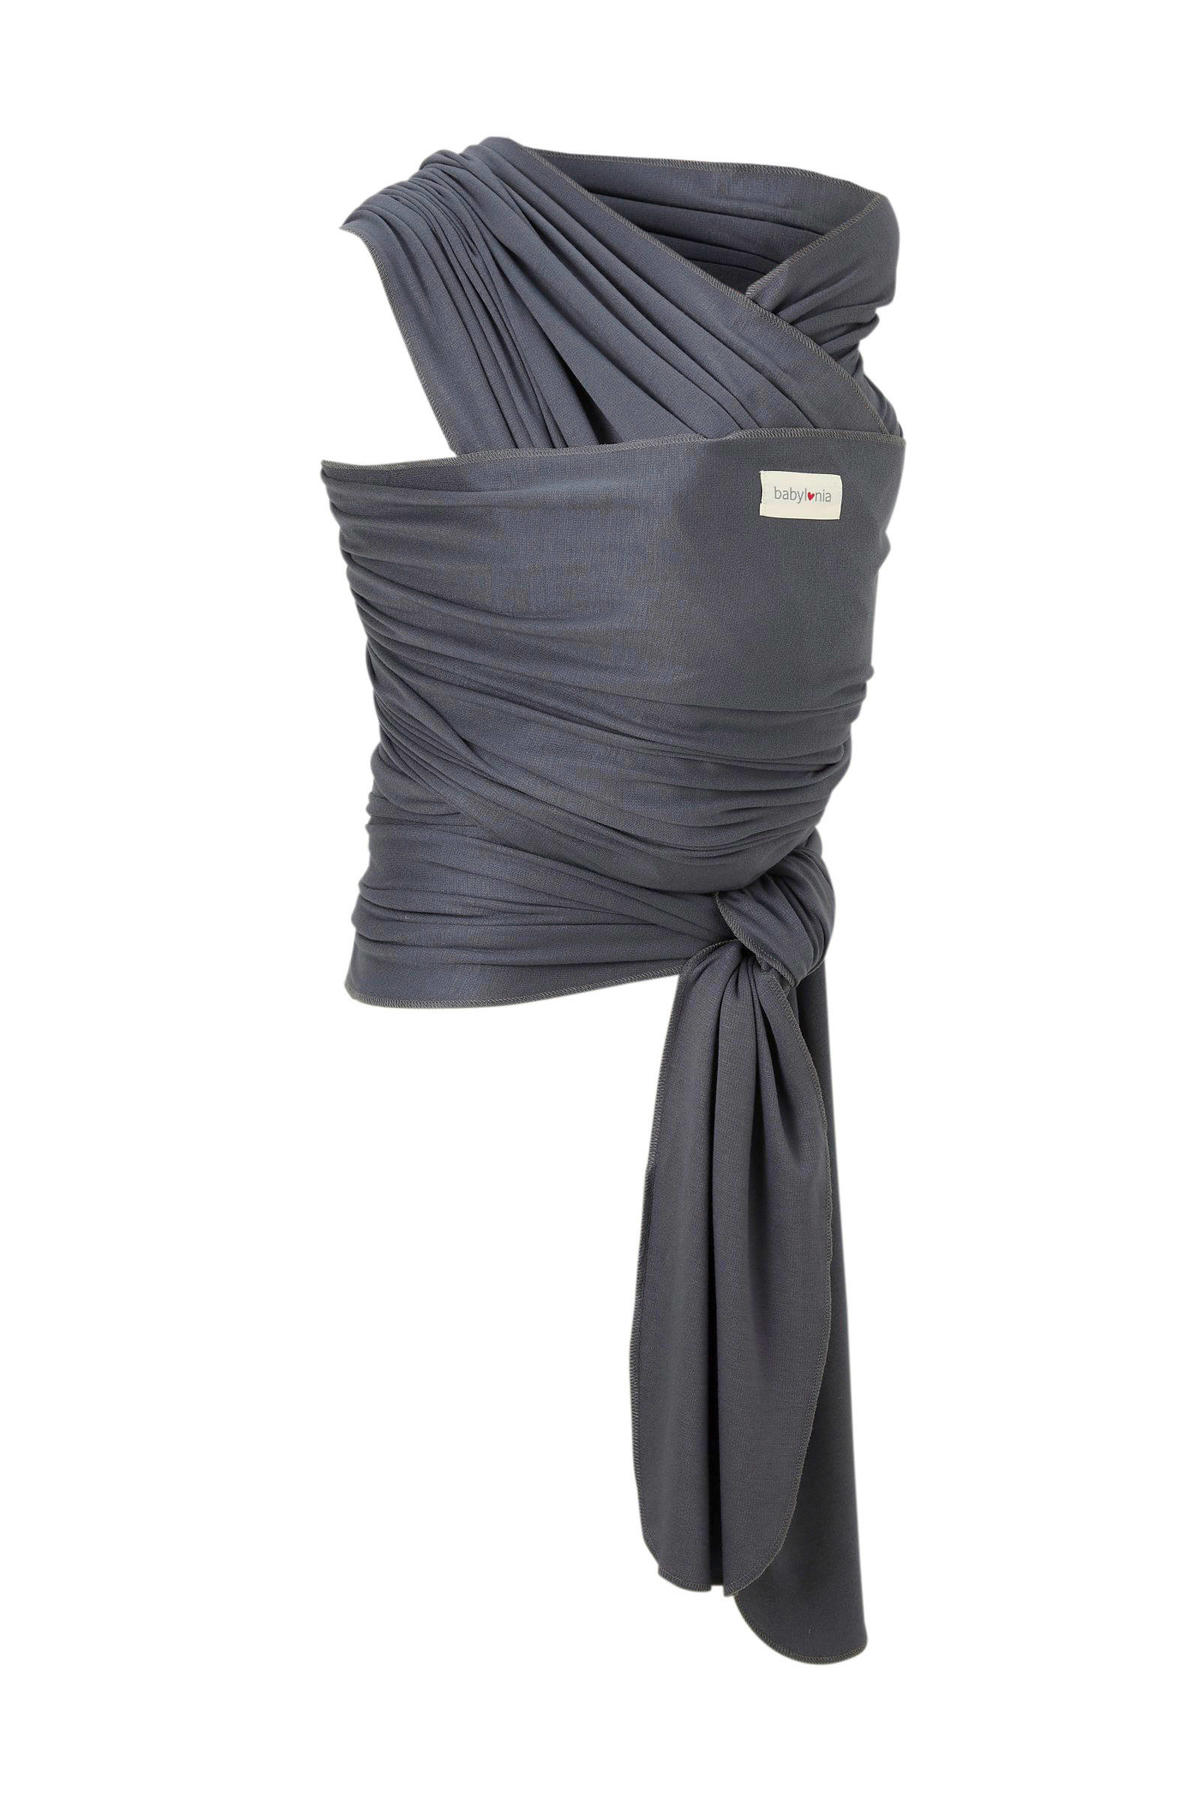 Prominent koppeling Roestig Babylonia draagdoek tricot-slen bamboo grijs | wehkamp